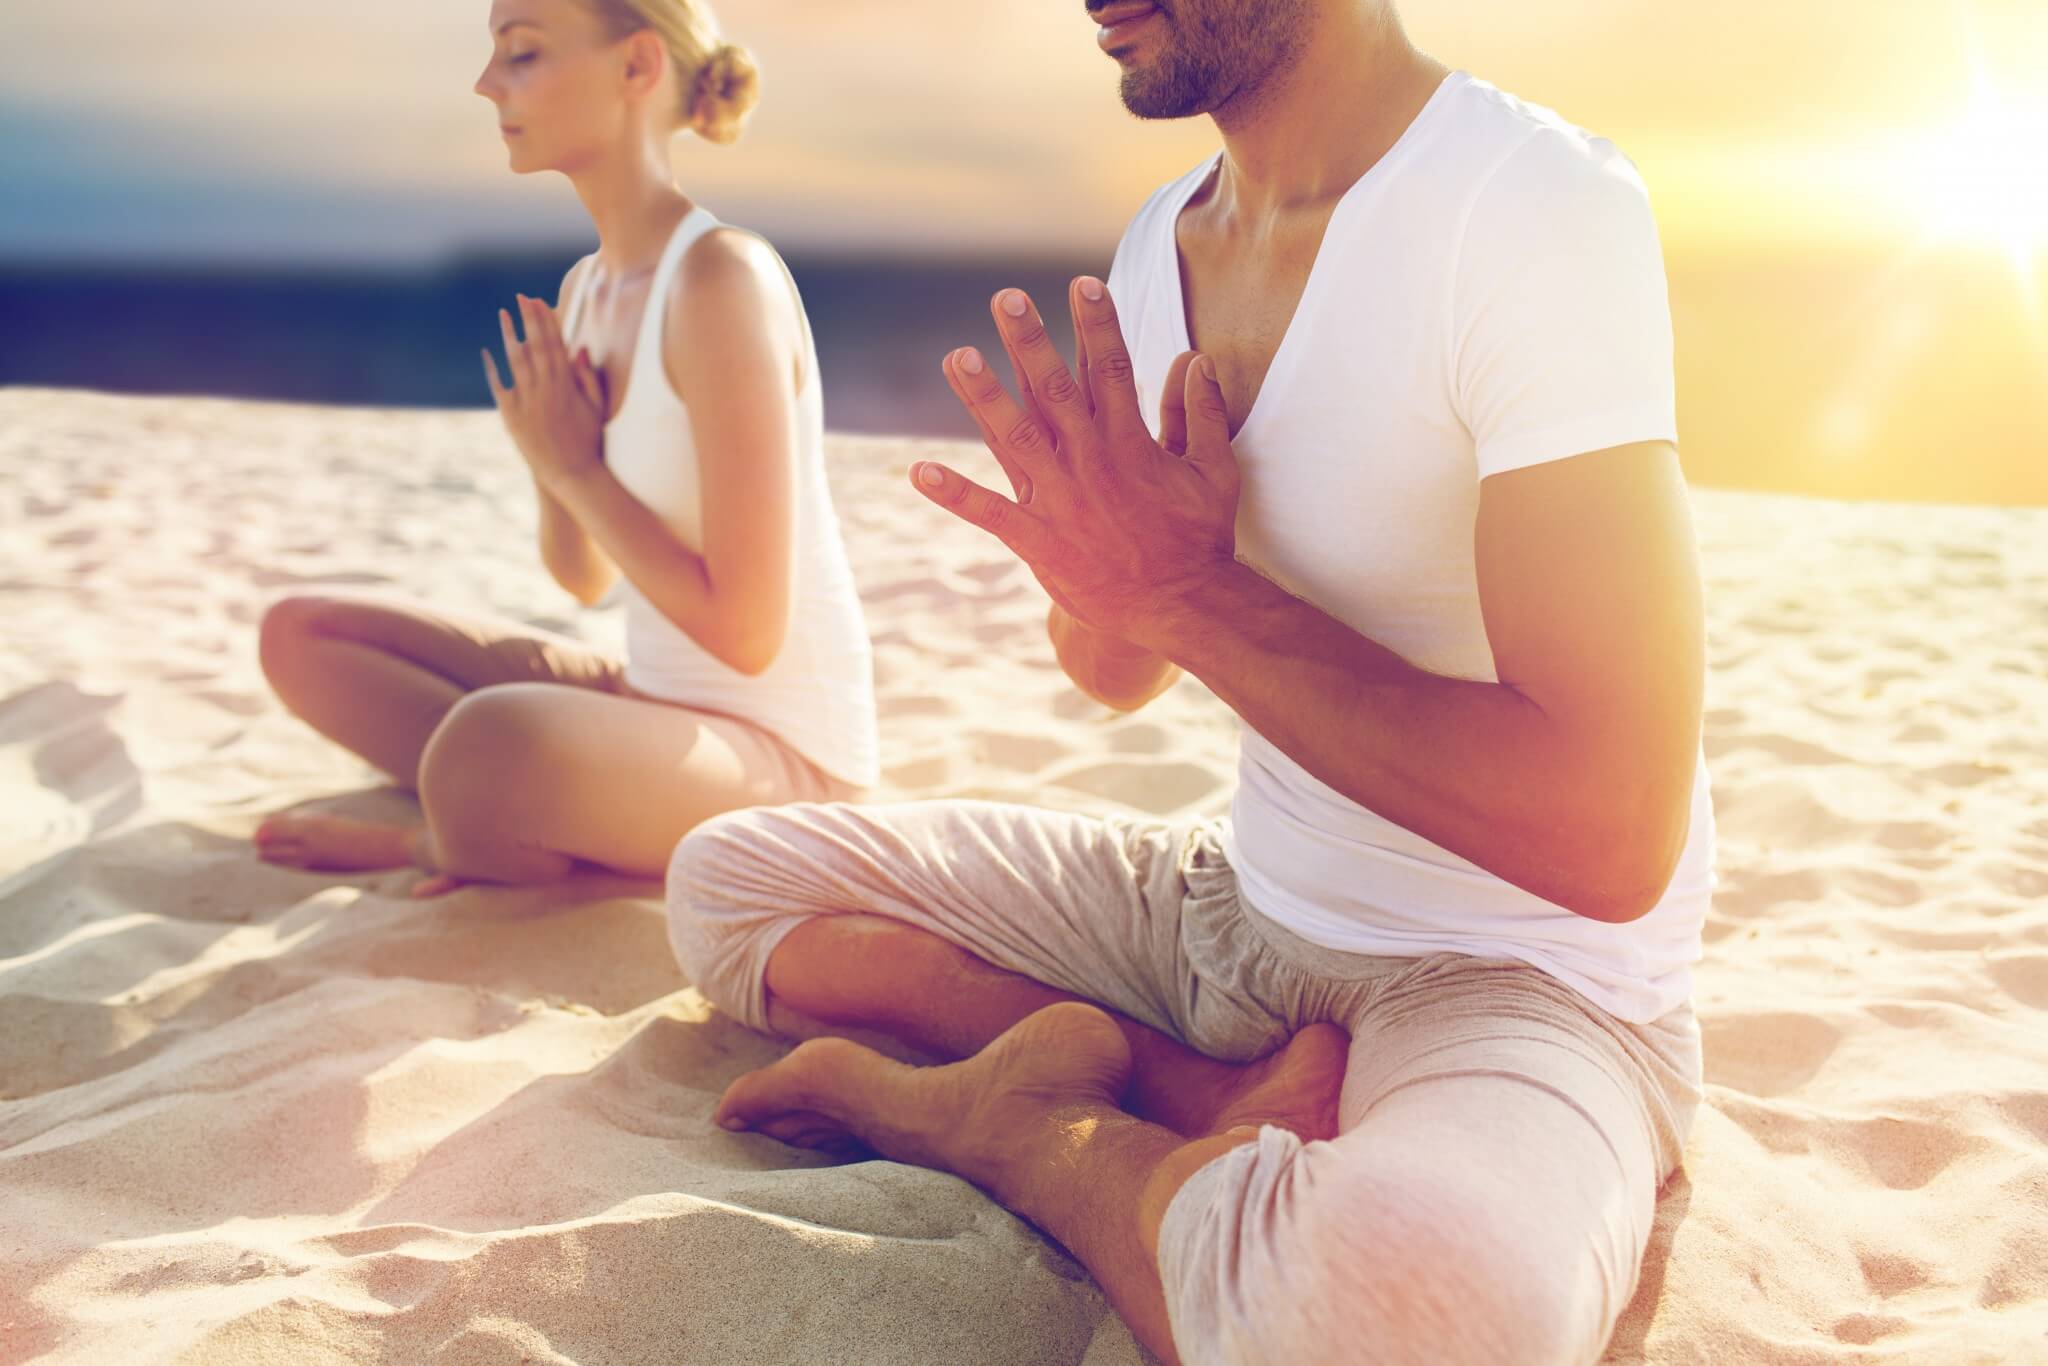 Cvičení jako aktivní meditace - meditovat lze i při zvedání činek